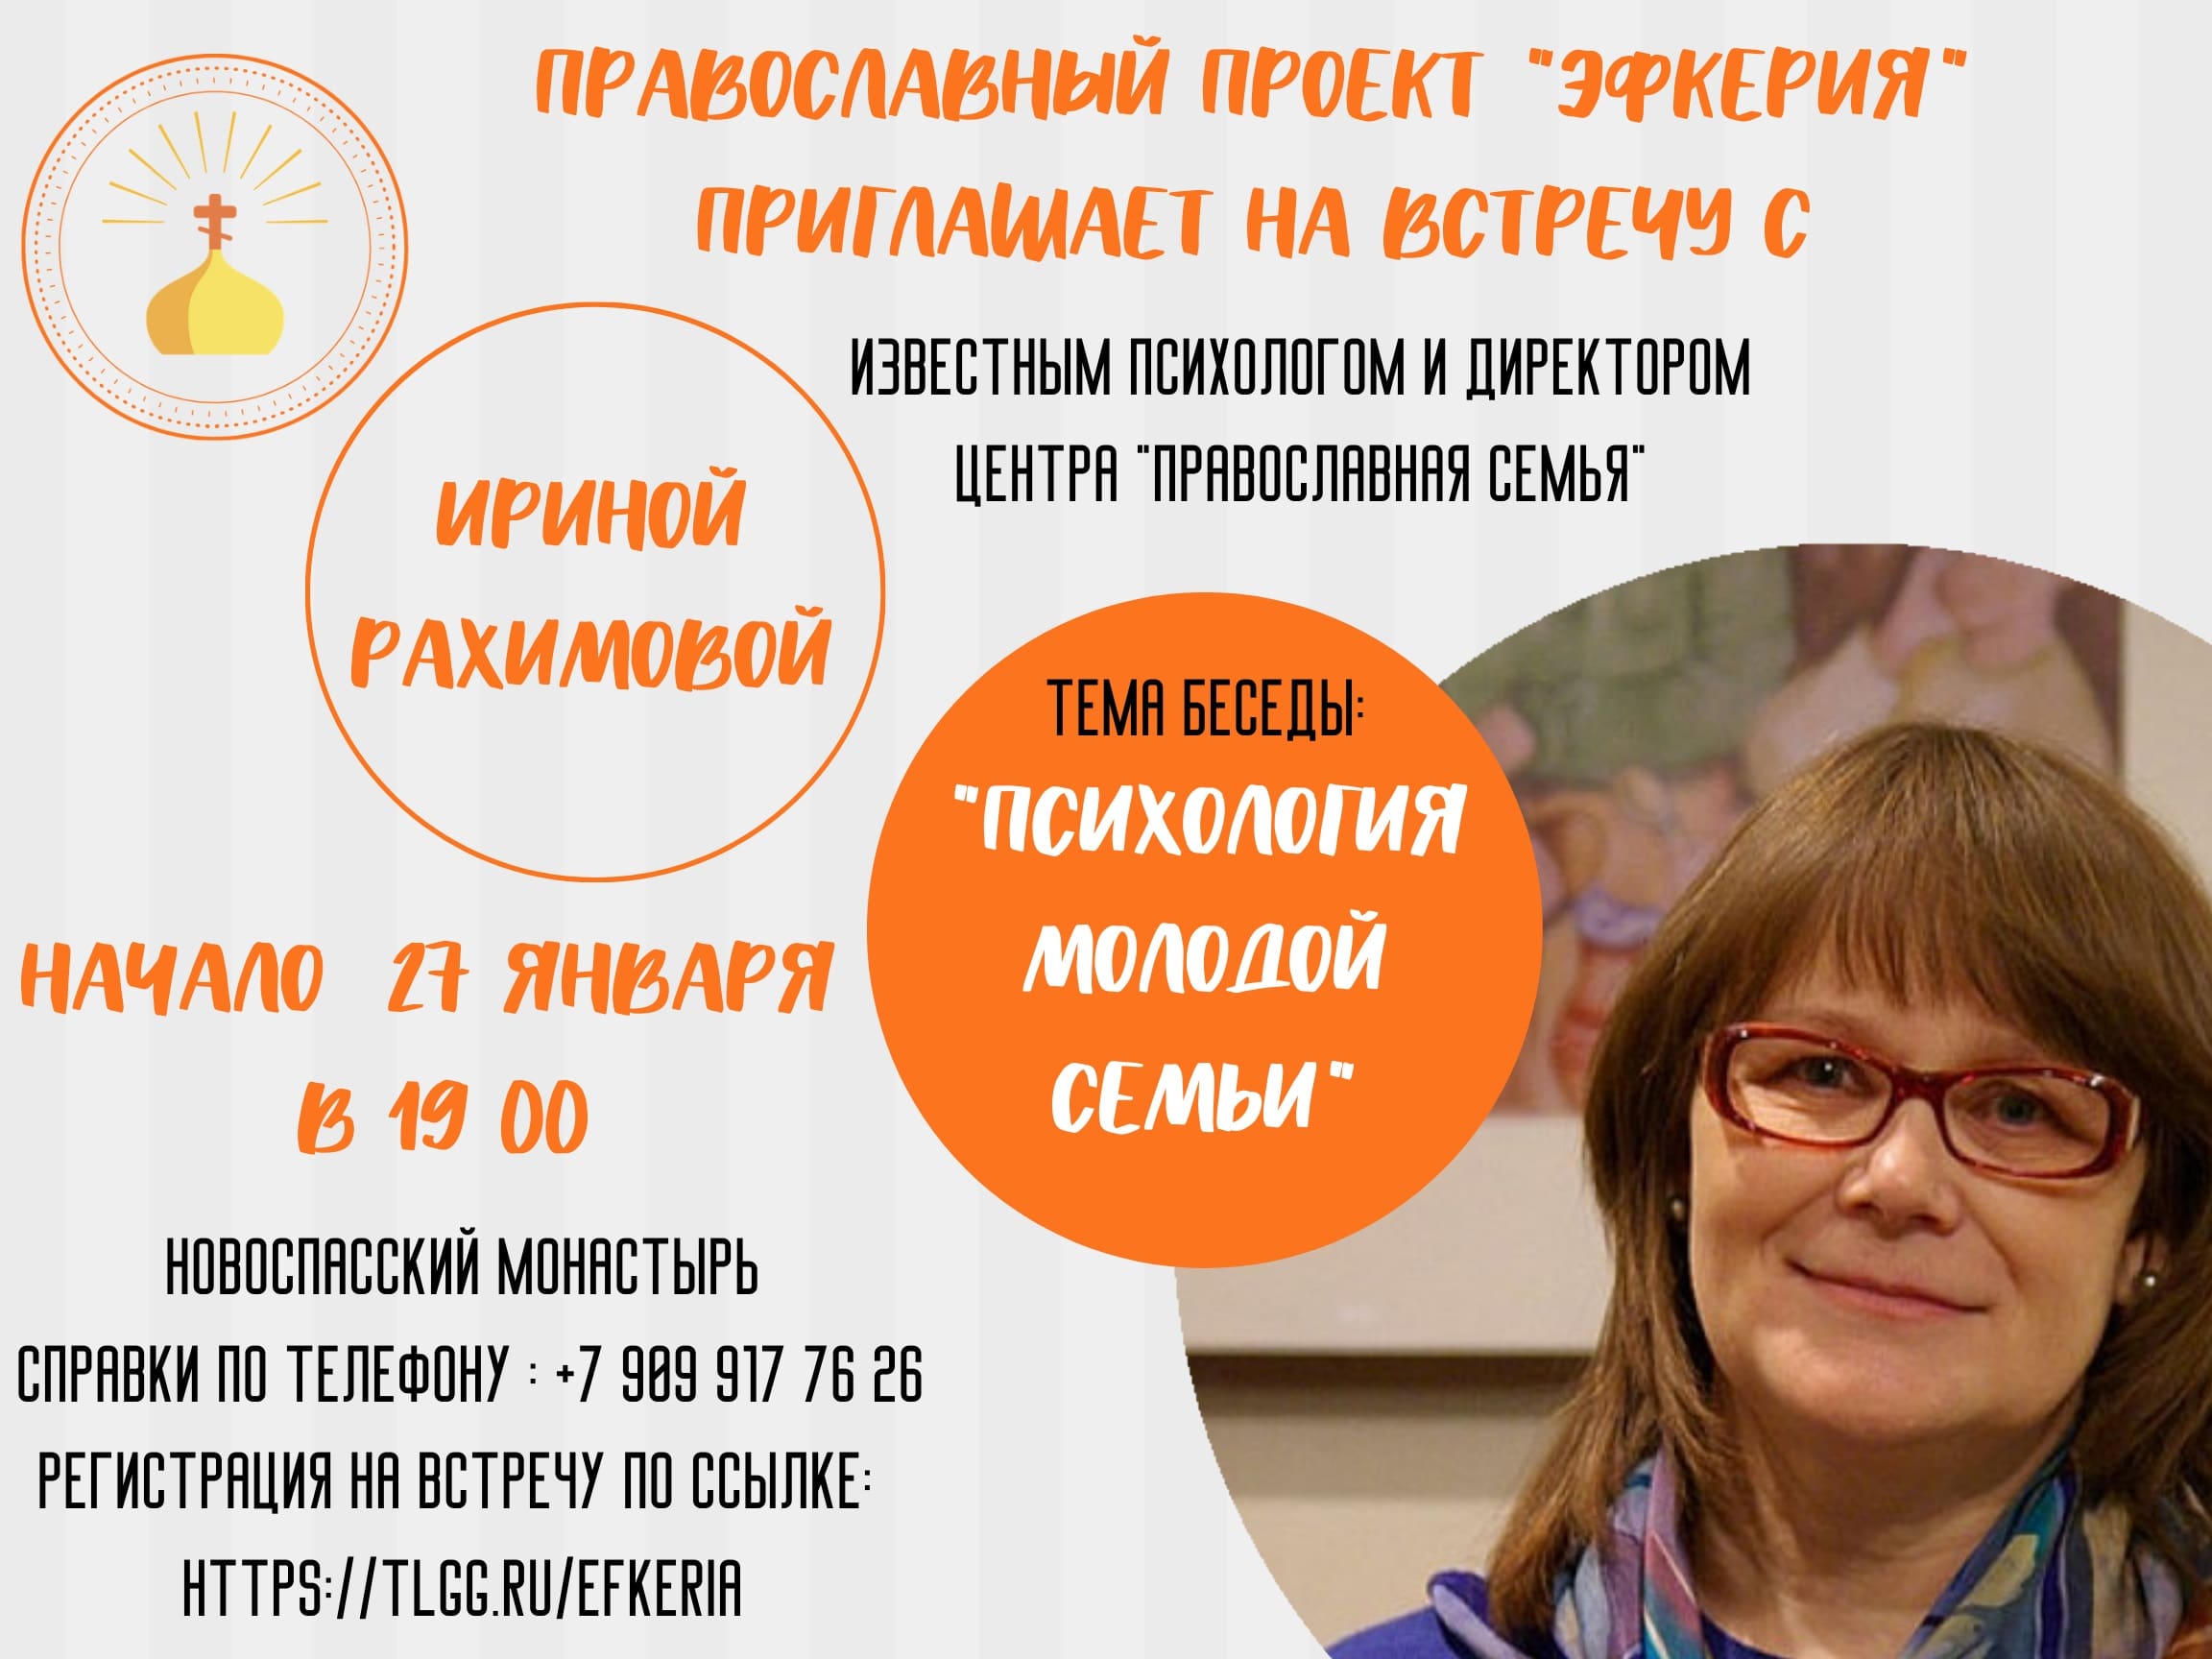 Приглашаем на встречу с известным психологом, писательницей и директором Центра, Ириной Рахимовой